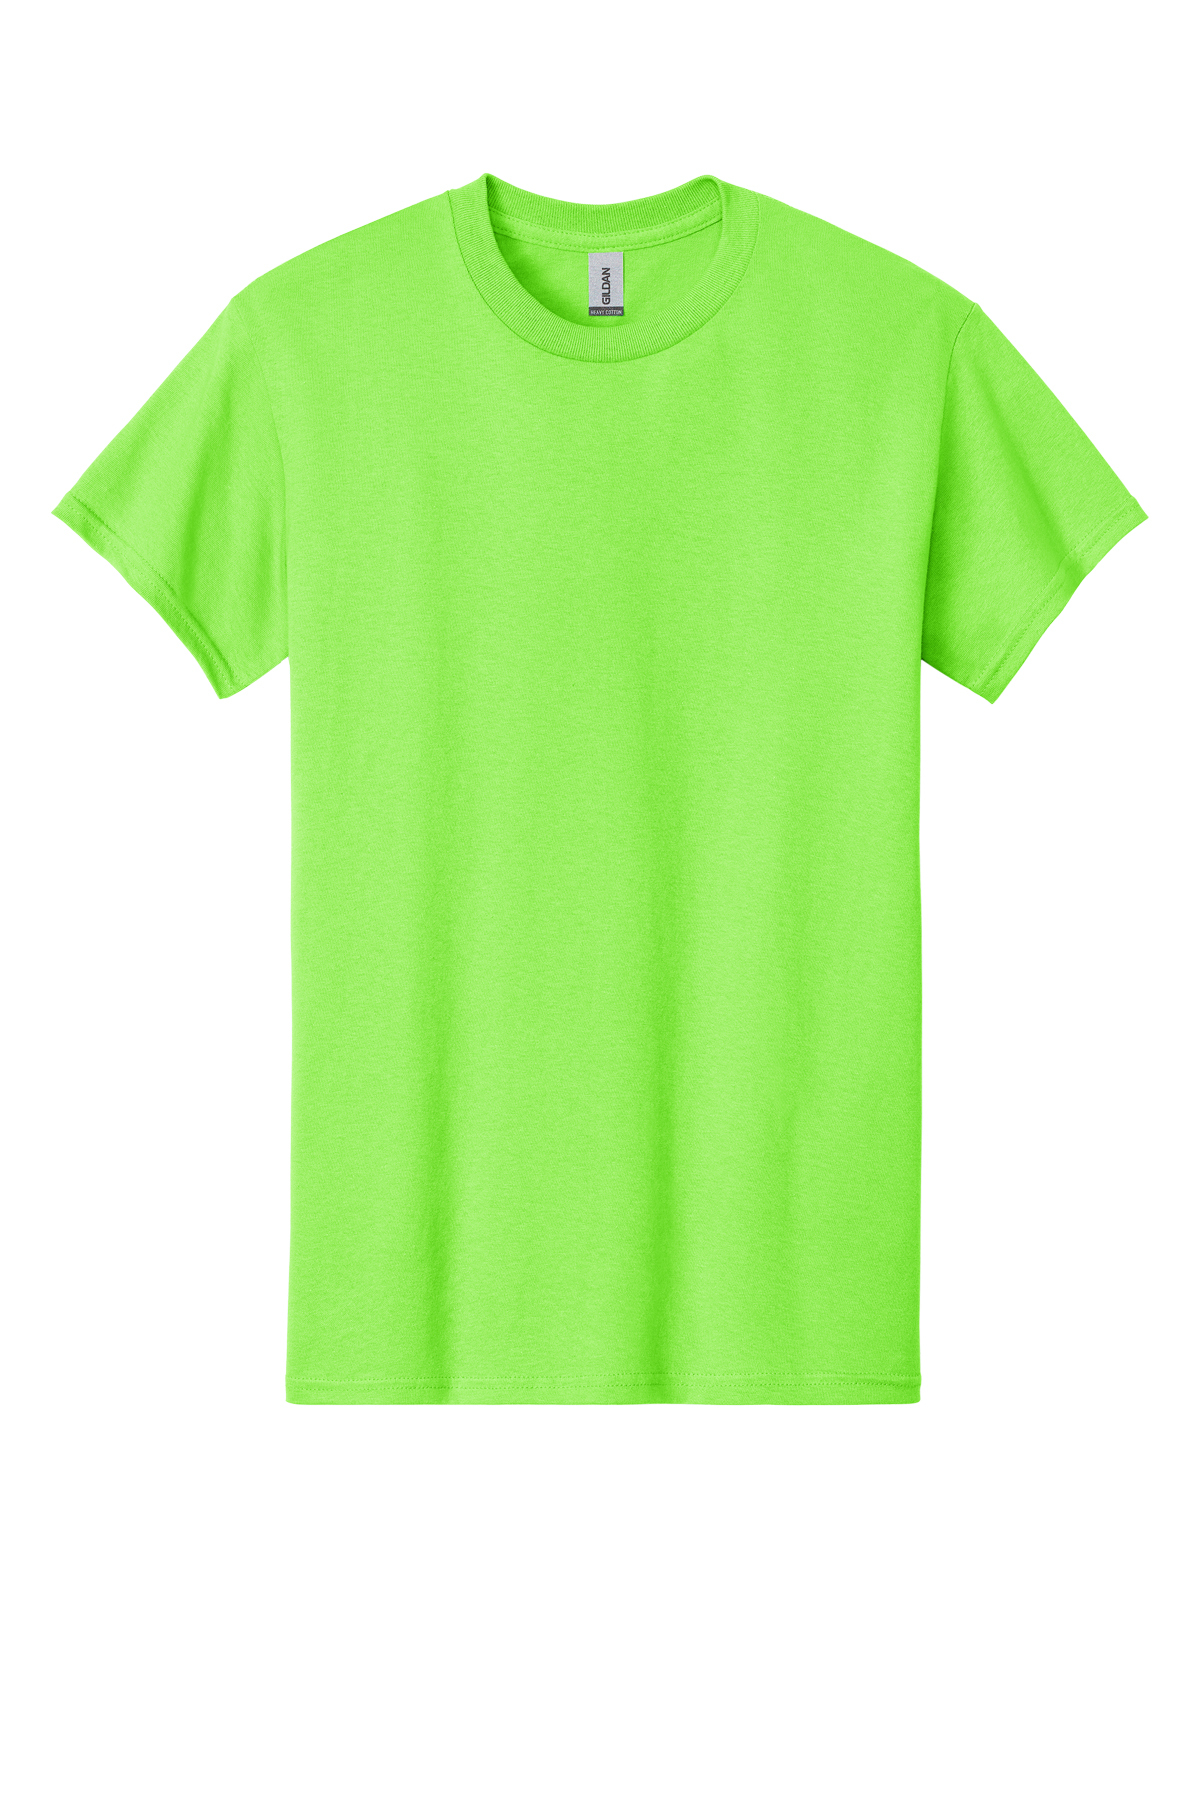 Heavy - | T-Shirt Cotton Product Gildan 100% Cotton SanMar |